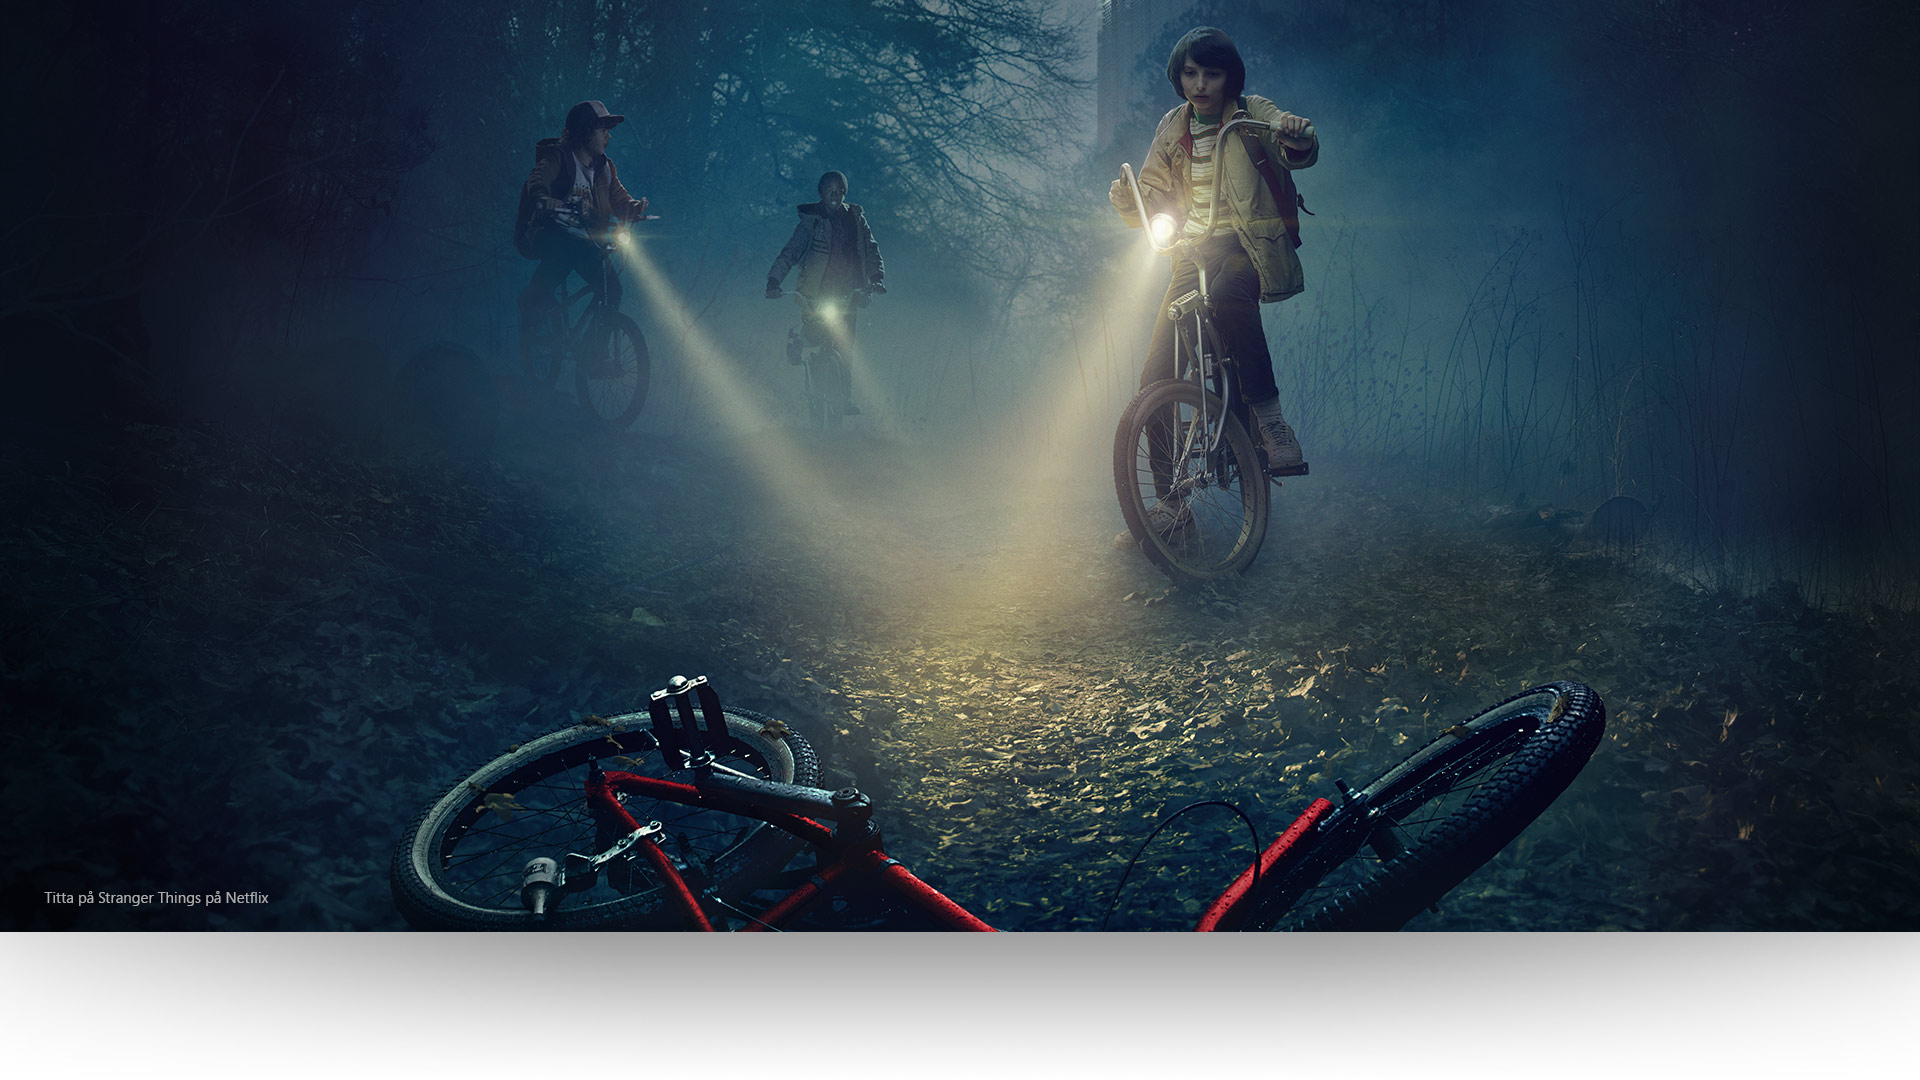 Stranger Things – Dustin, Lucas och Mike lyser upp en övergiven cykel på en kuslig skogsväg. Titta på Stranger Things på Netflix.